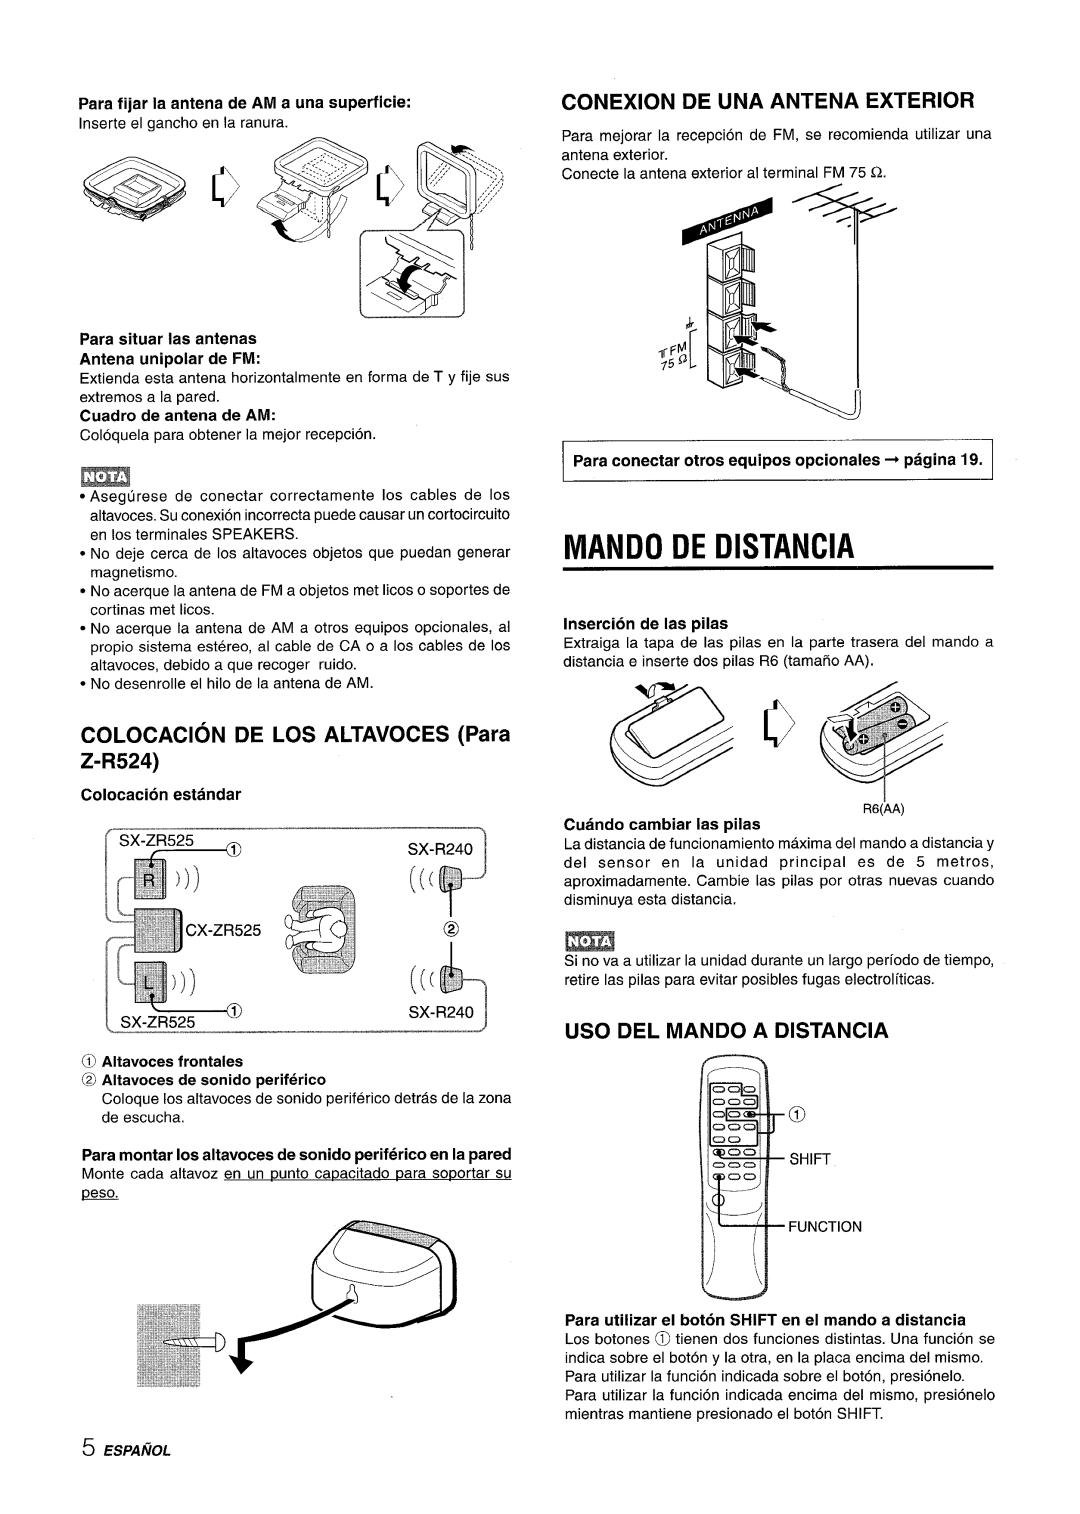 Sony CX-ZR525 manual Mando De Distancia, Conexion De Una Antena Exterior, COLOCACION DE LOS ALTAVOCES Para Z-R524 